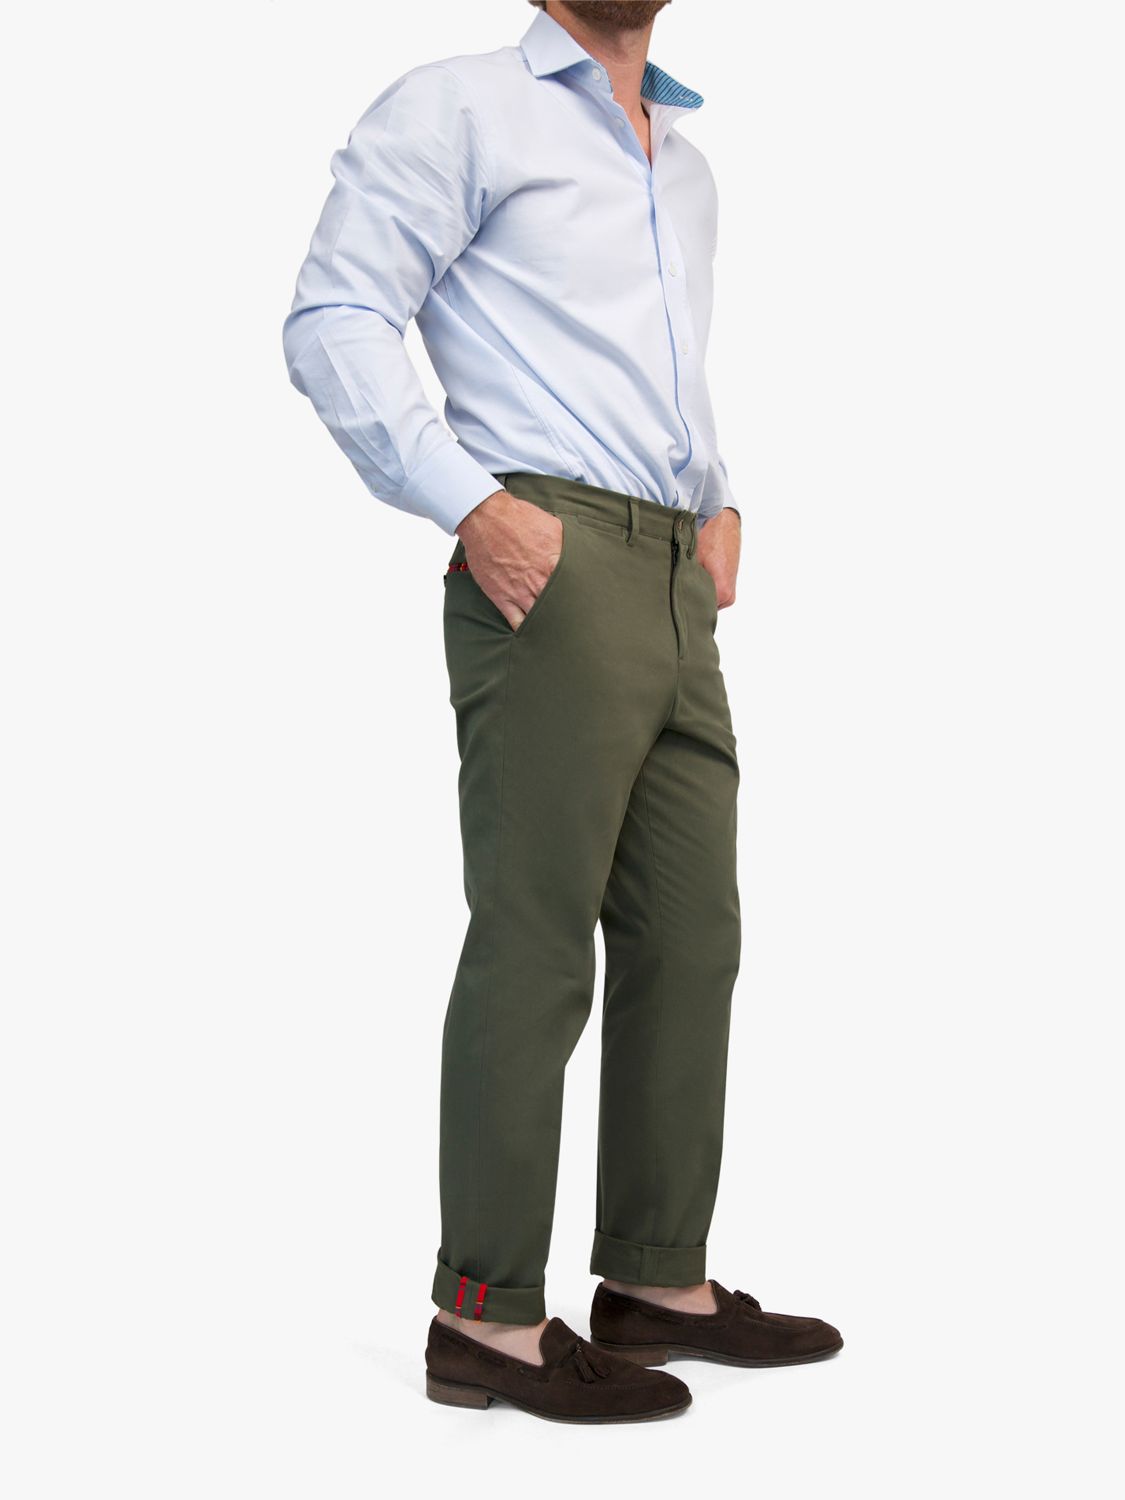 KOY Slim Chinos Trousers, Khaki, 34R